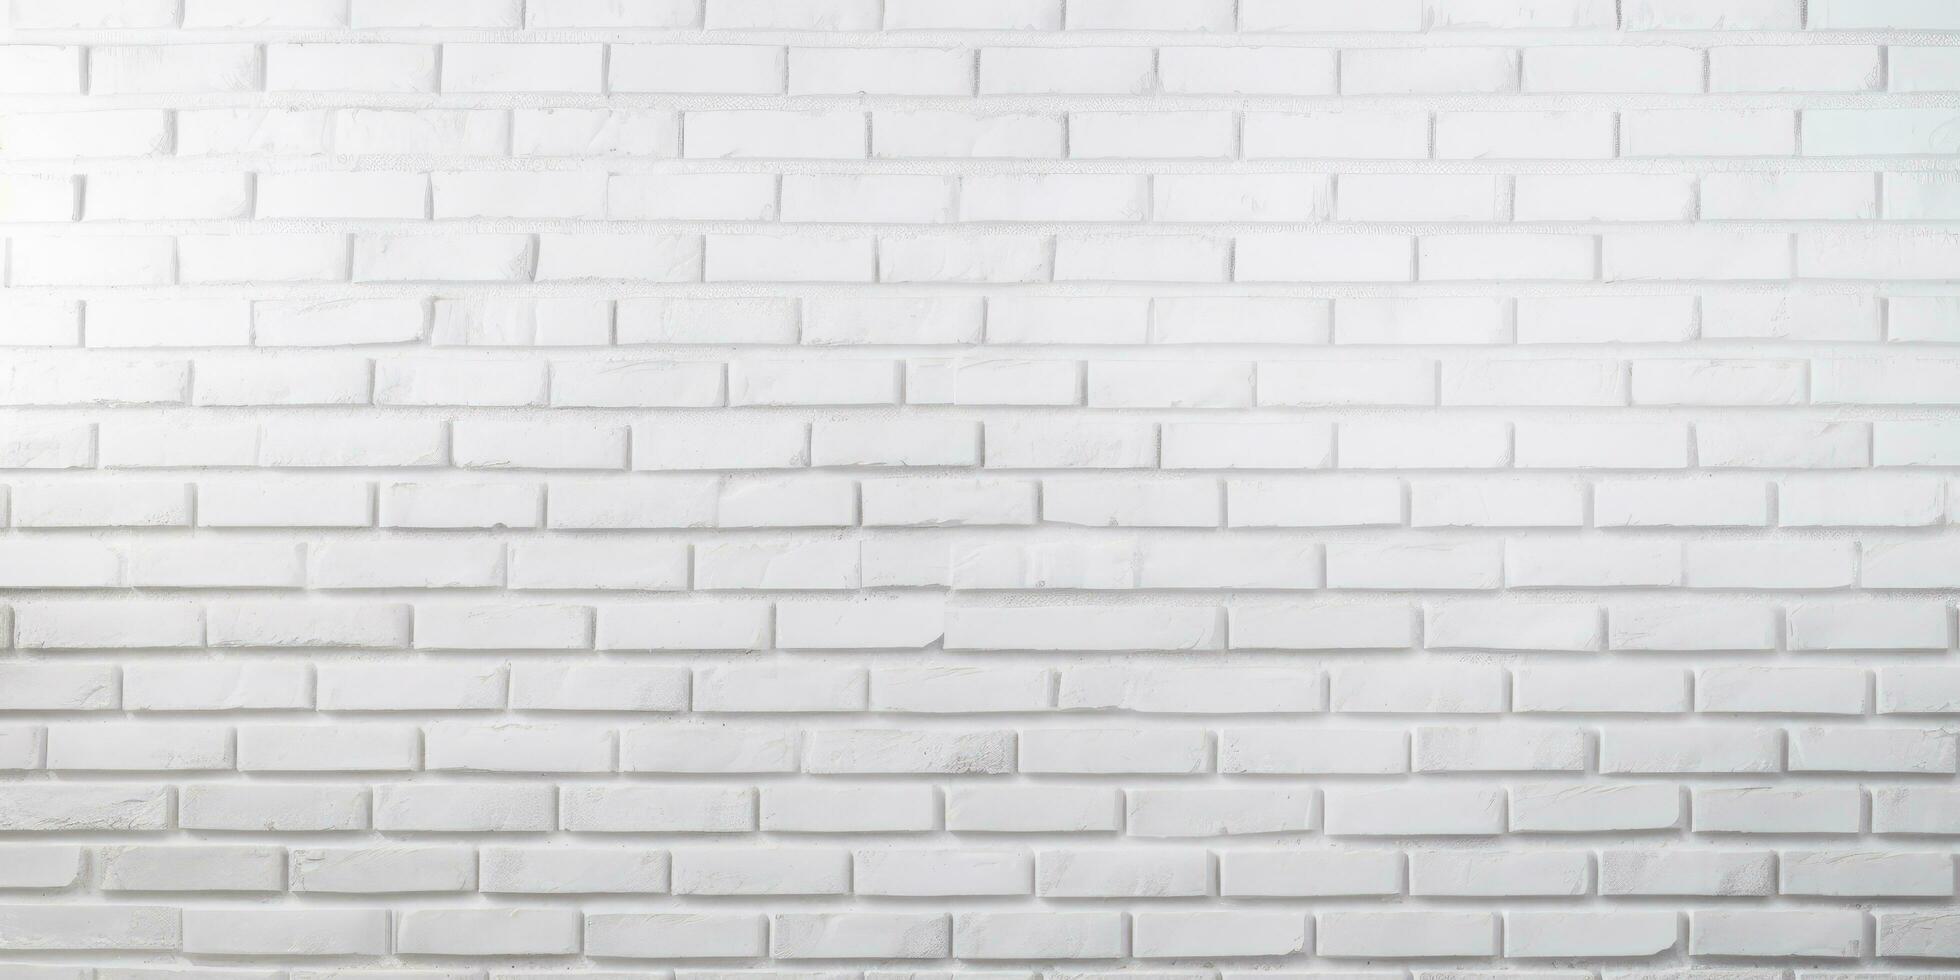 bianca grigio mattone parete buio sfondo - pietra sfondo cemento calcestruzzo foto